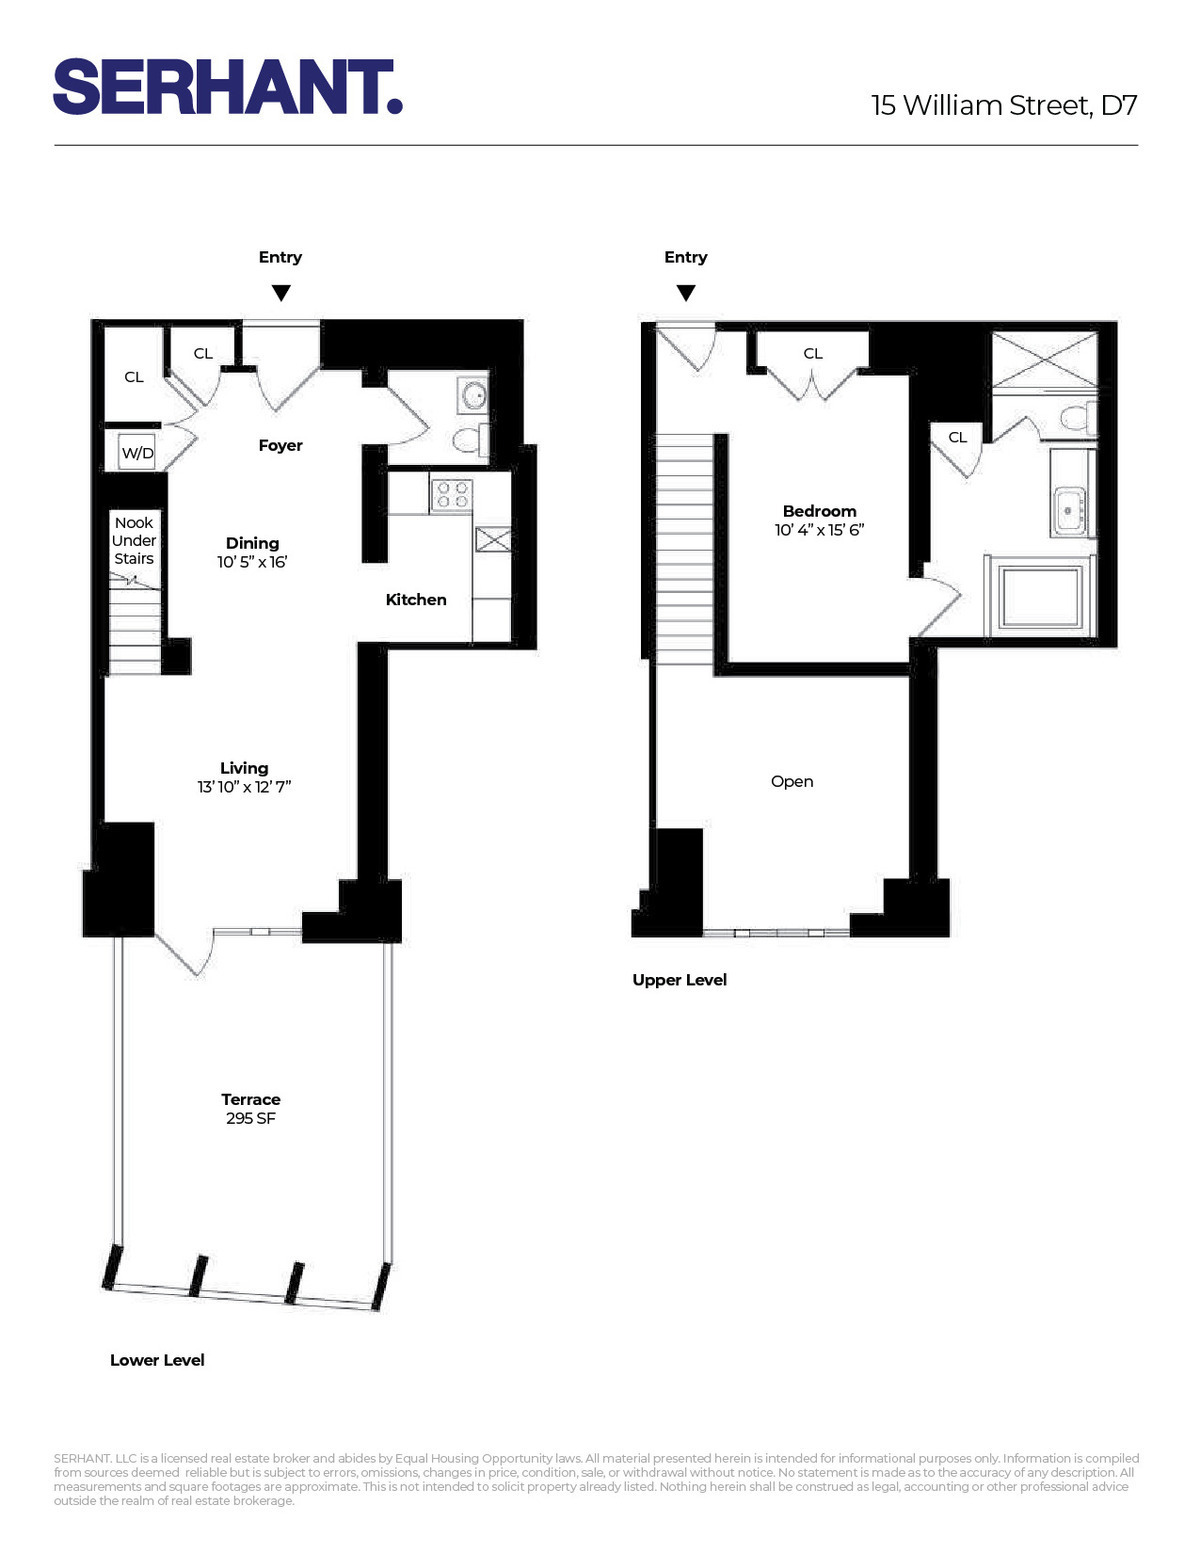 Floorplan for 15 William Street, DUPLEX7